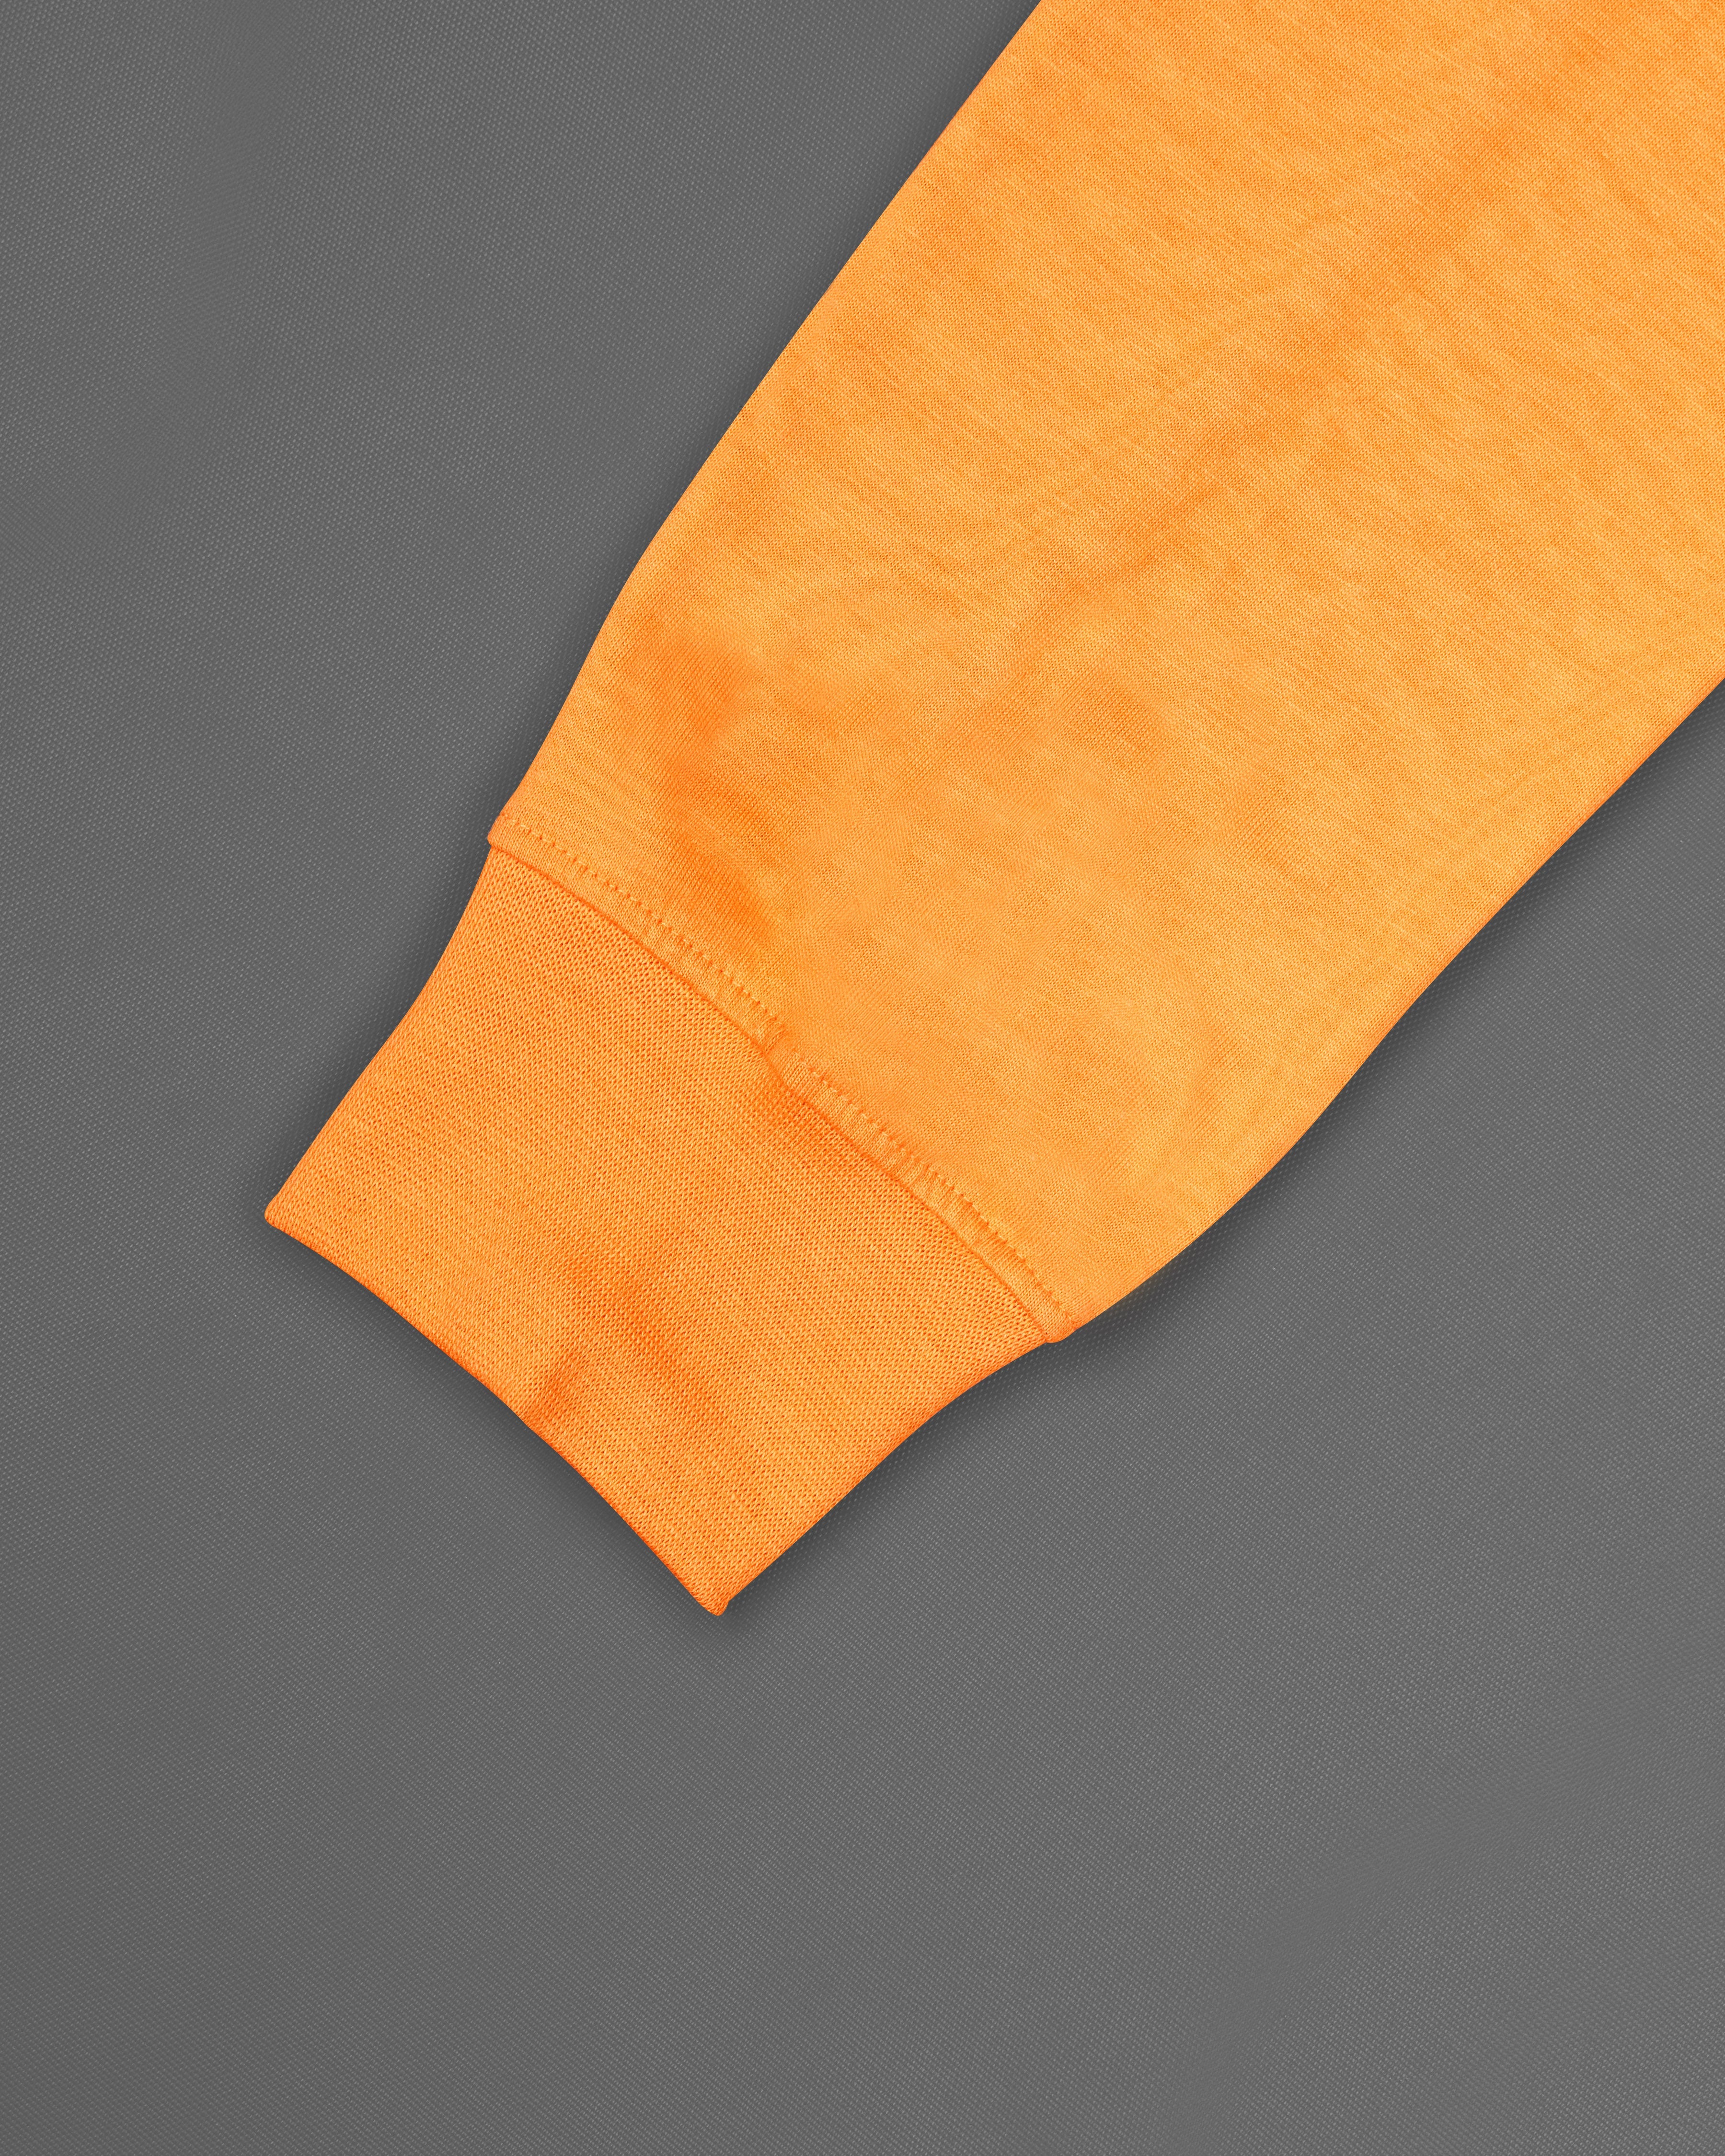 Tulip Orange Multicolour PatchWork Organic Designer Sweatshirt TS163-W01-S, TS163-W01-M, TS163-W01-L, TS163-W01-XL, TS163-W01-XXL